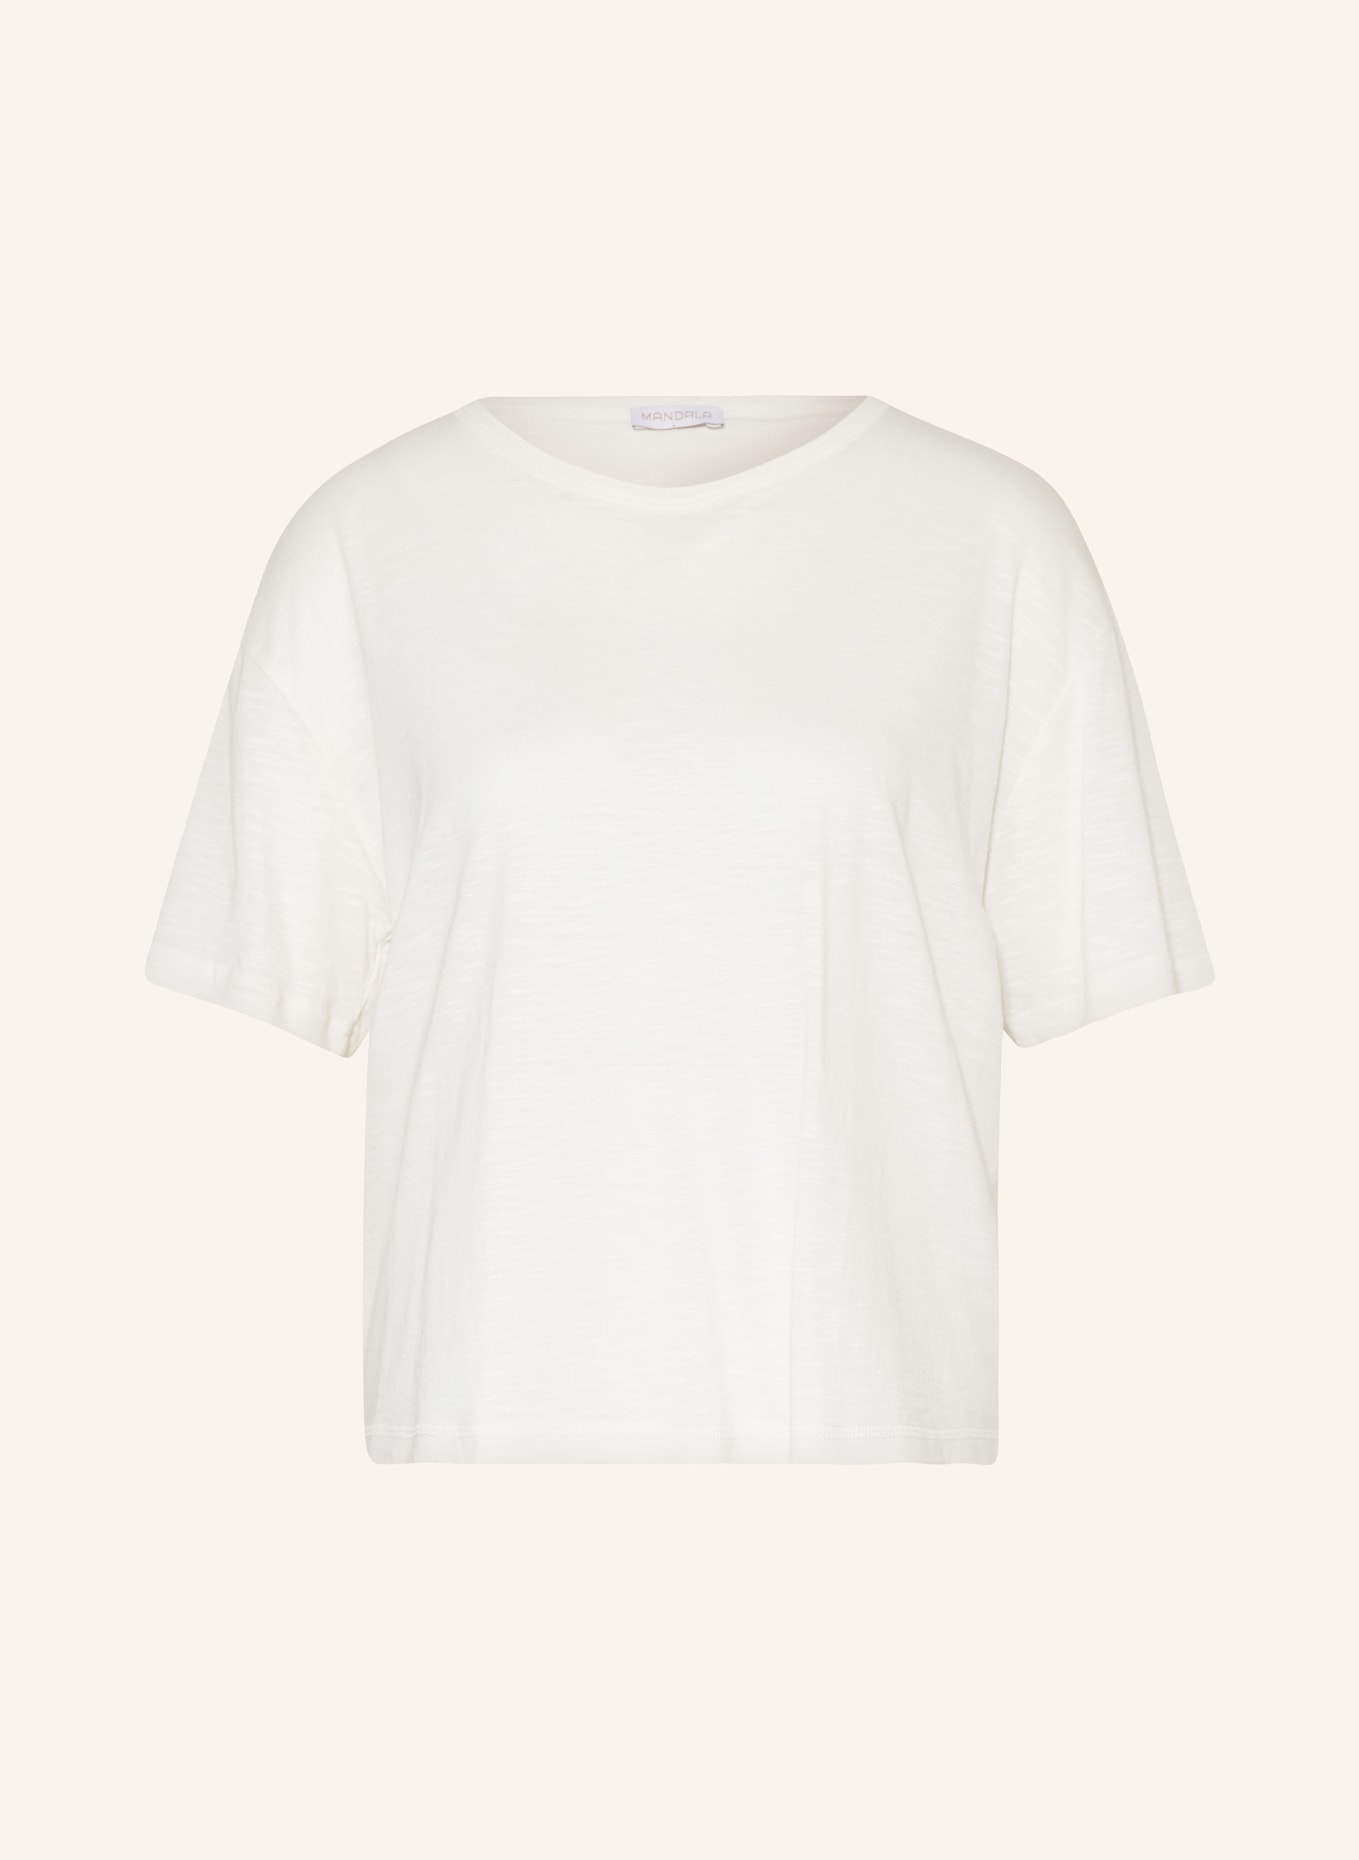 MANDALA T-shirt, Kolor: BIAŁY (Obrazek 1)